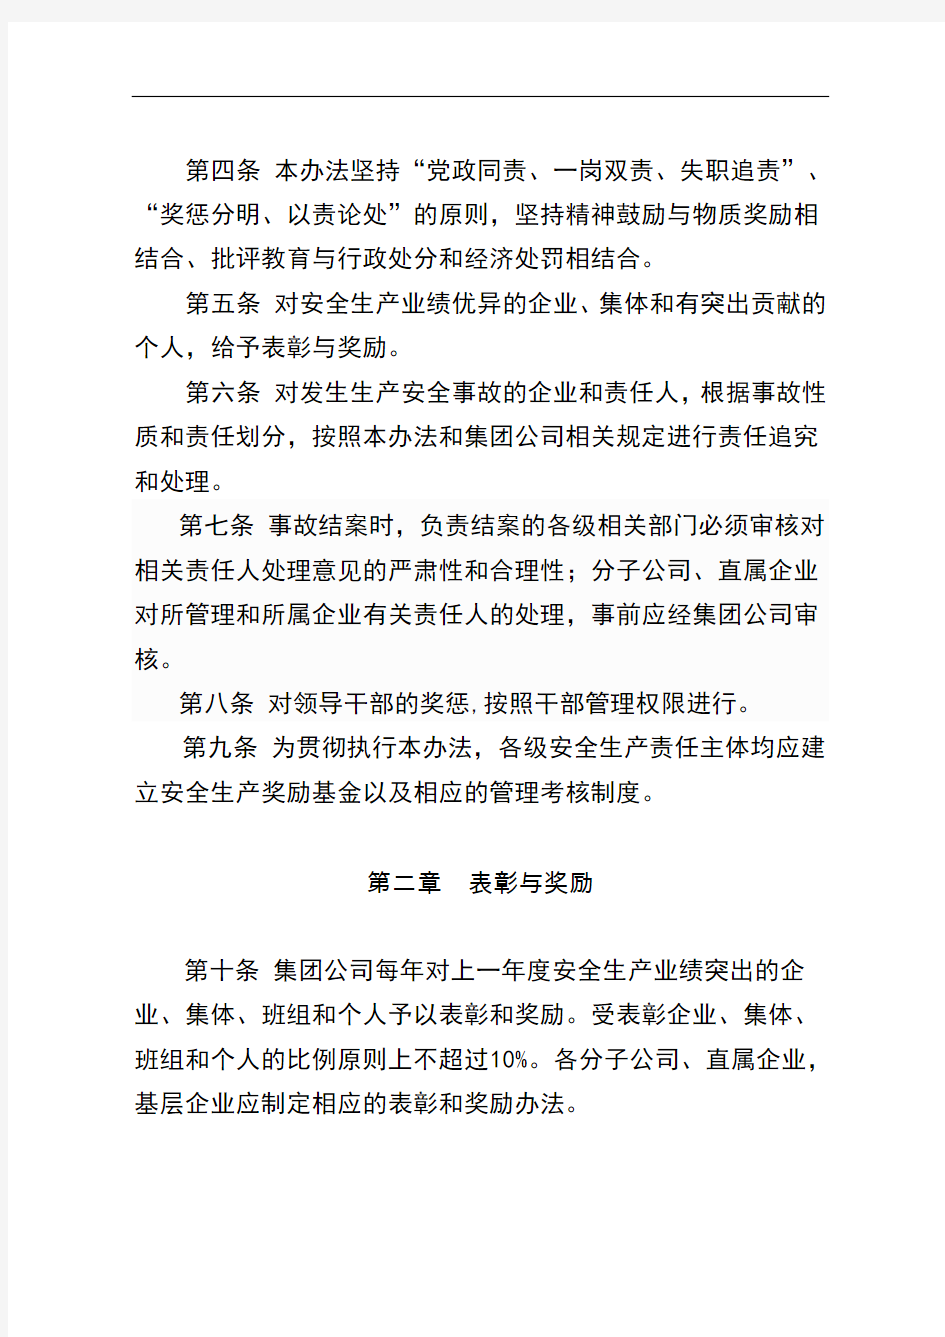 中国大唐集团公司安全生产工作奖惩办法